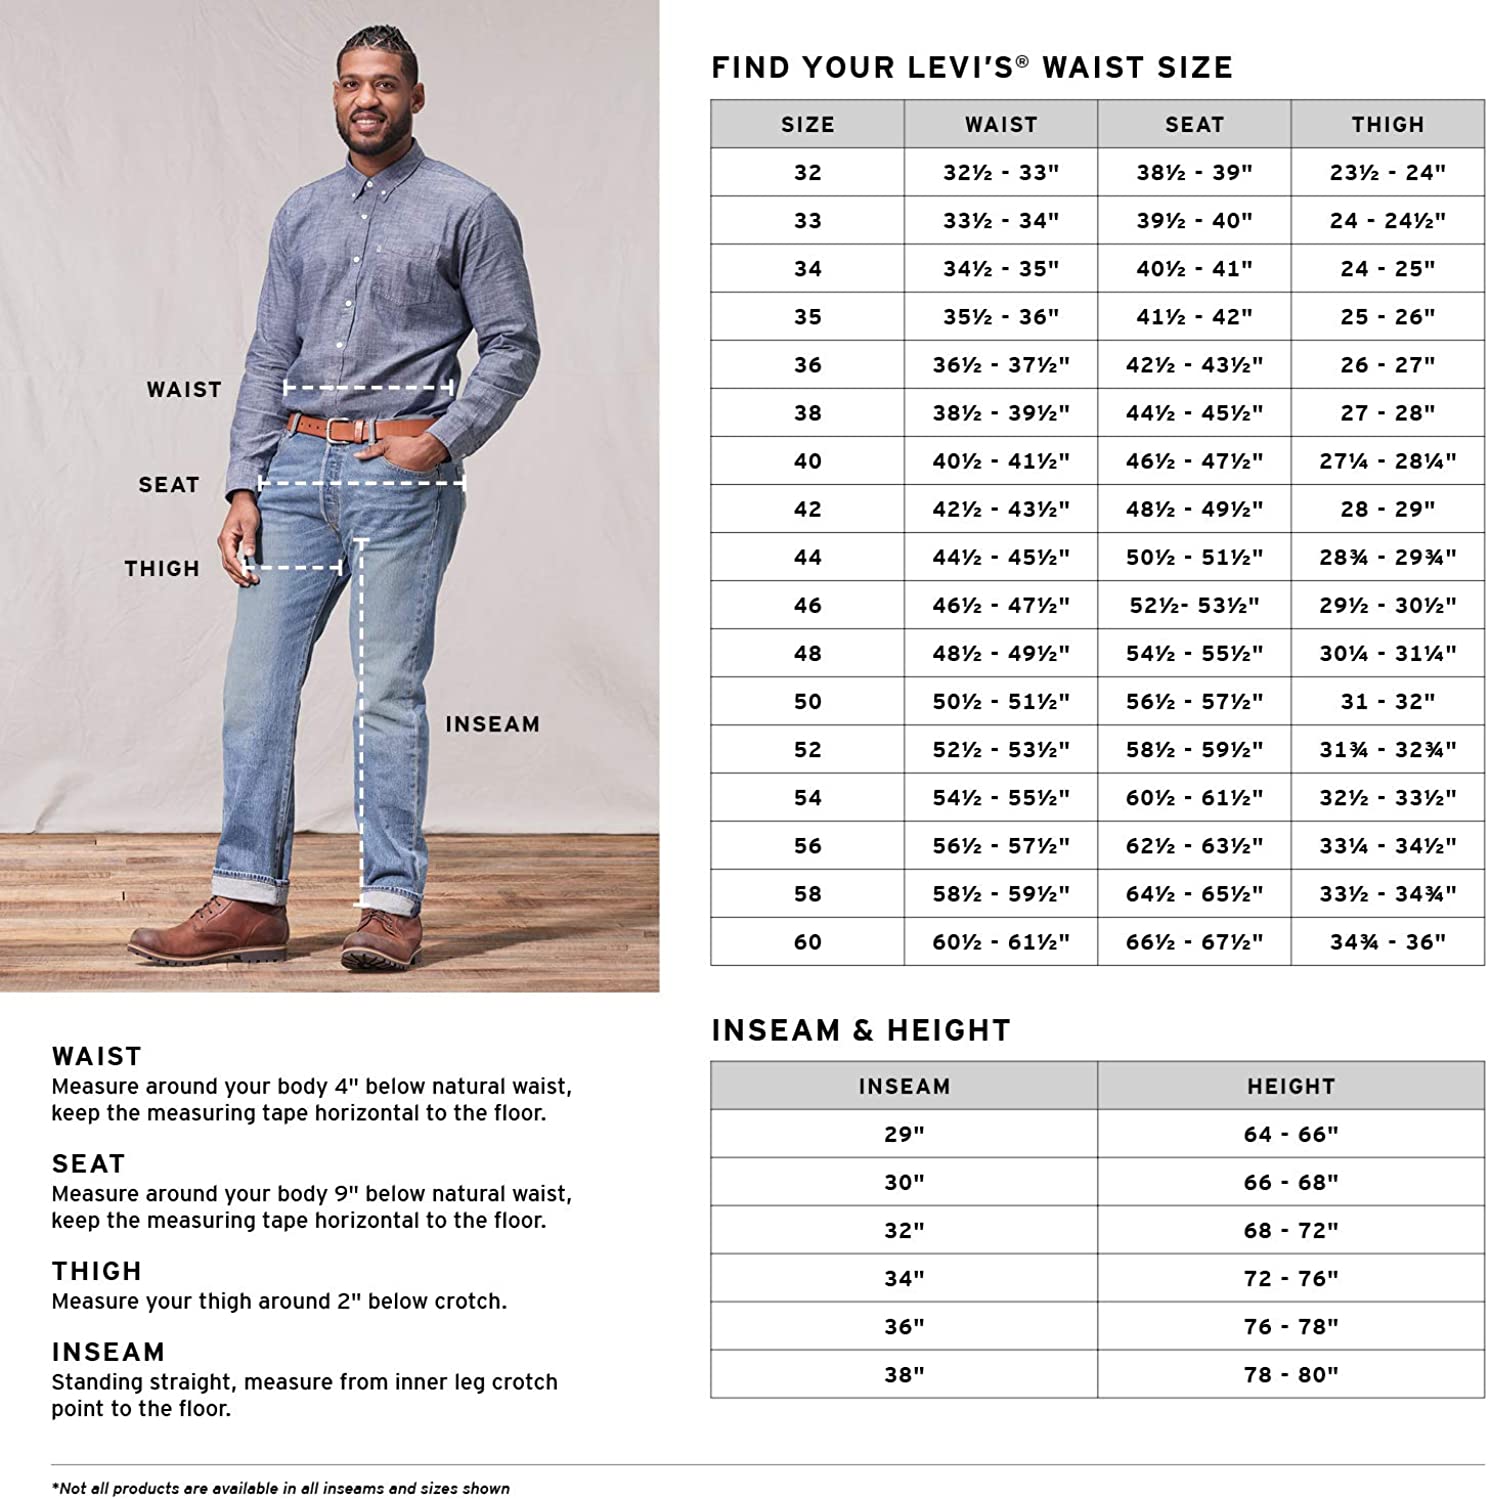 Как отличить джинсы левис подделку от оригинала без эксперта